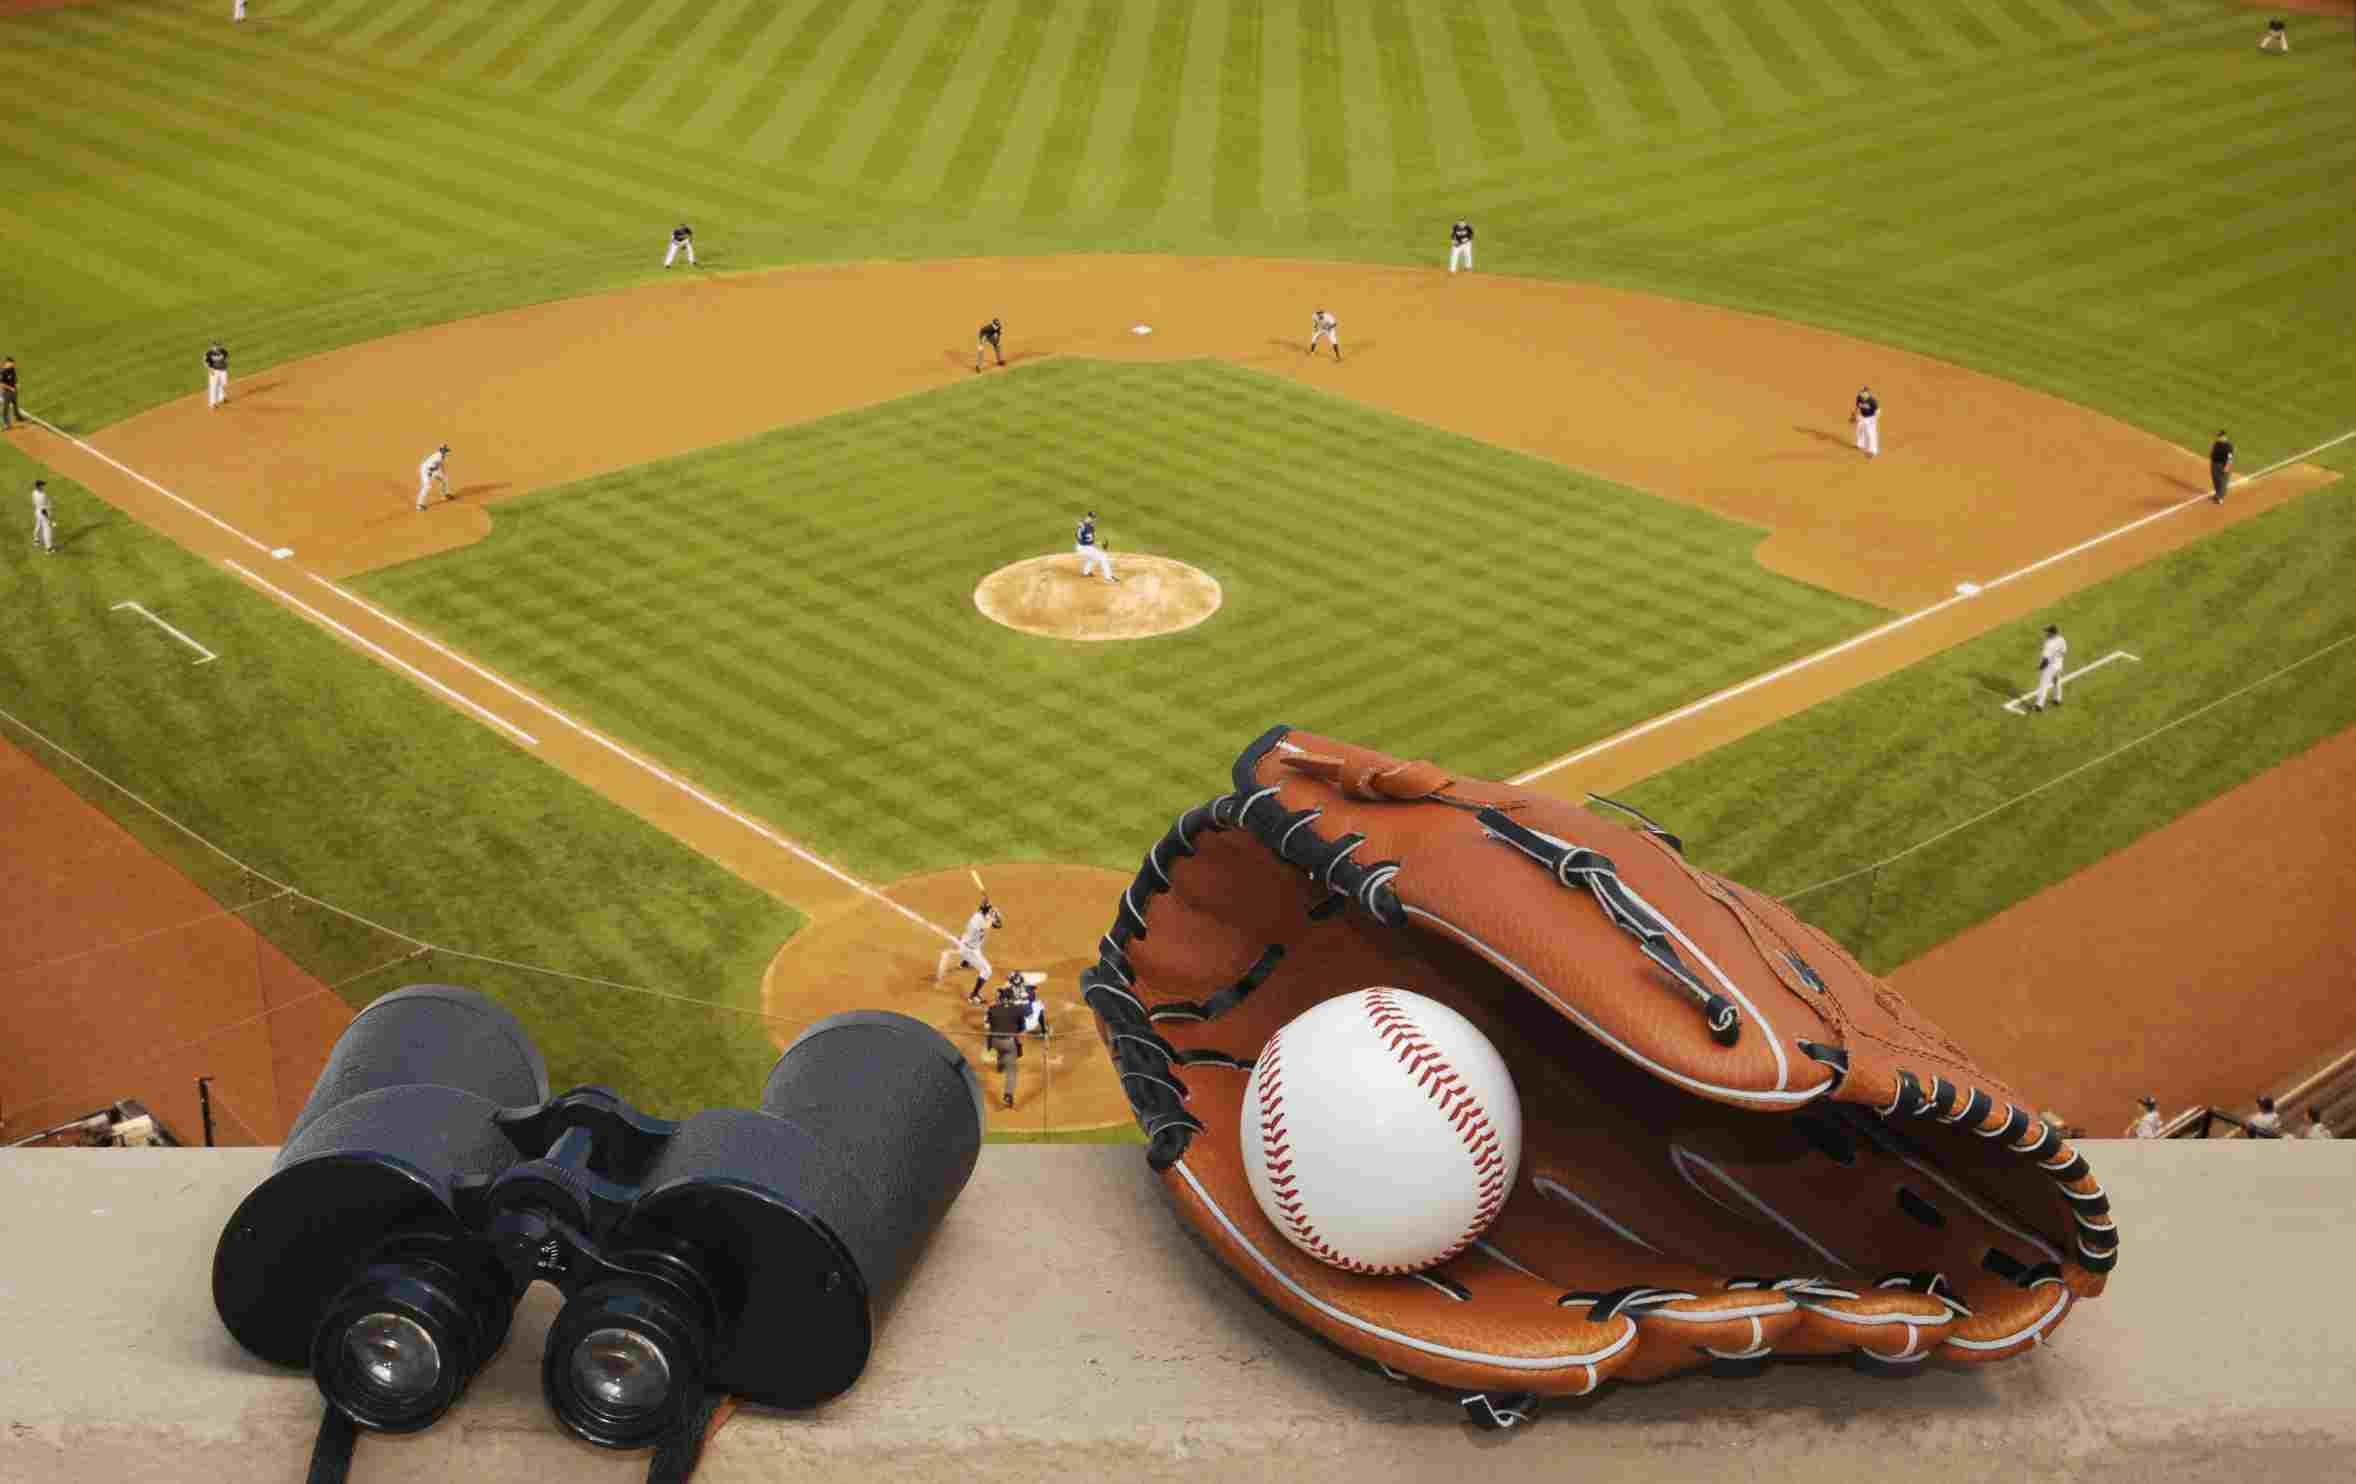 How long do baseball games last?